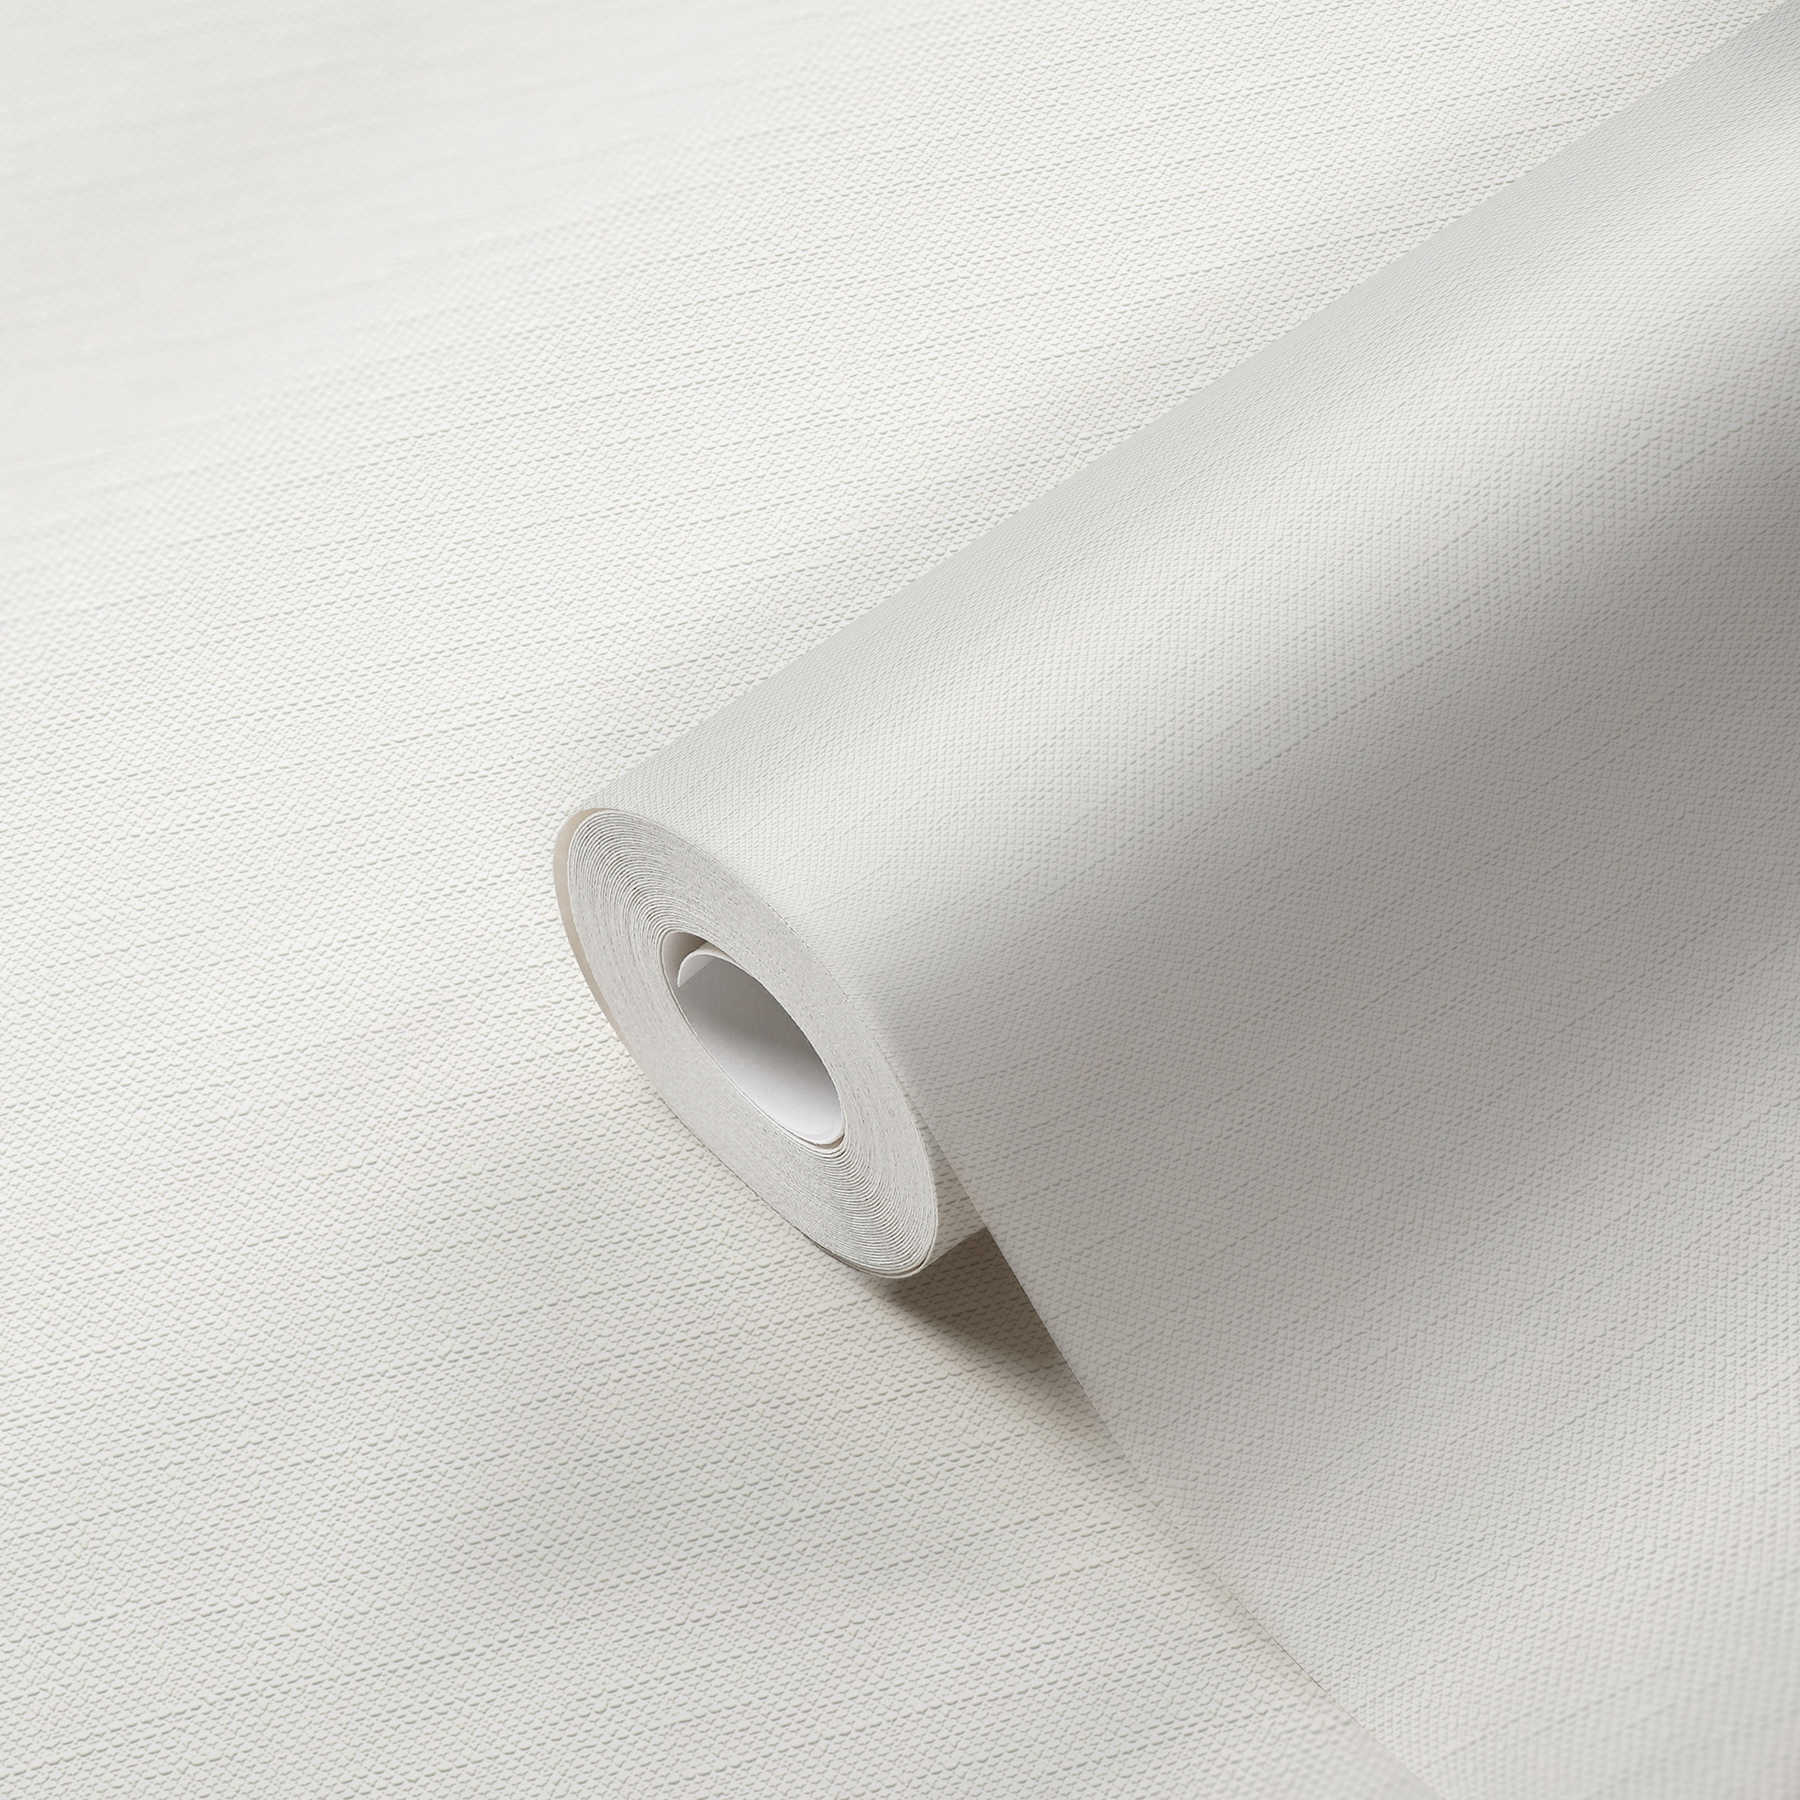             Papel pintado blanco con diseño texturizado de aspecto textil
        